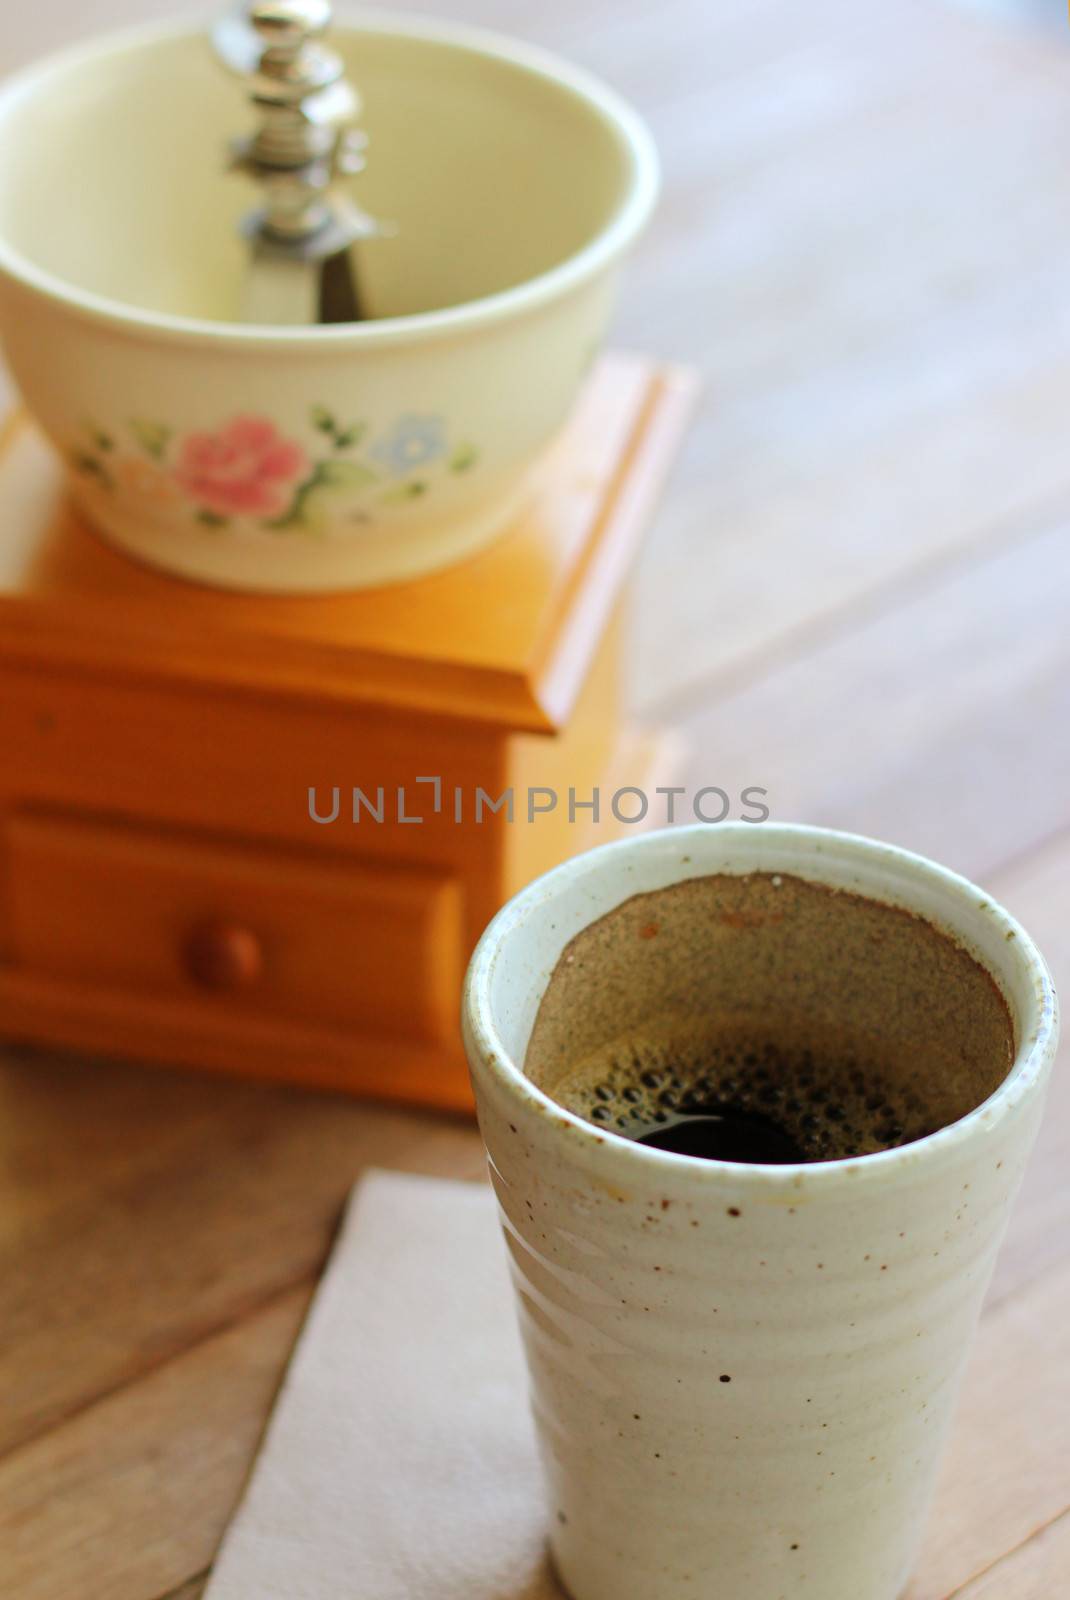 Black coffee with vintage coffee grinder